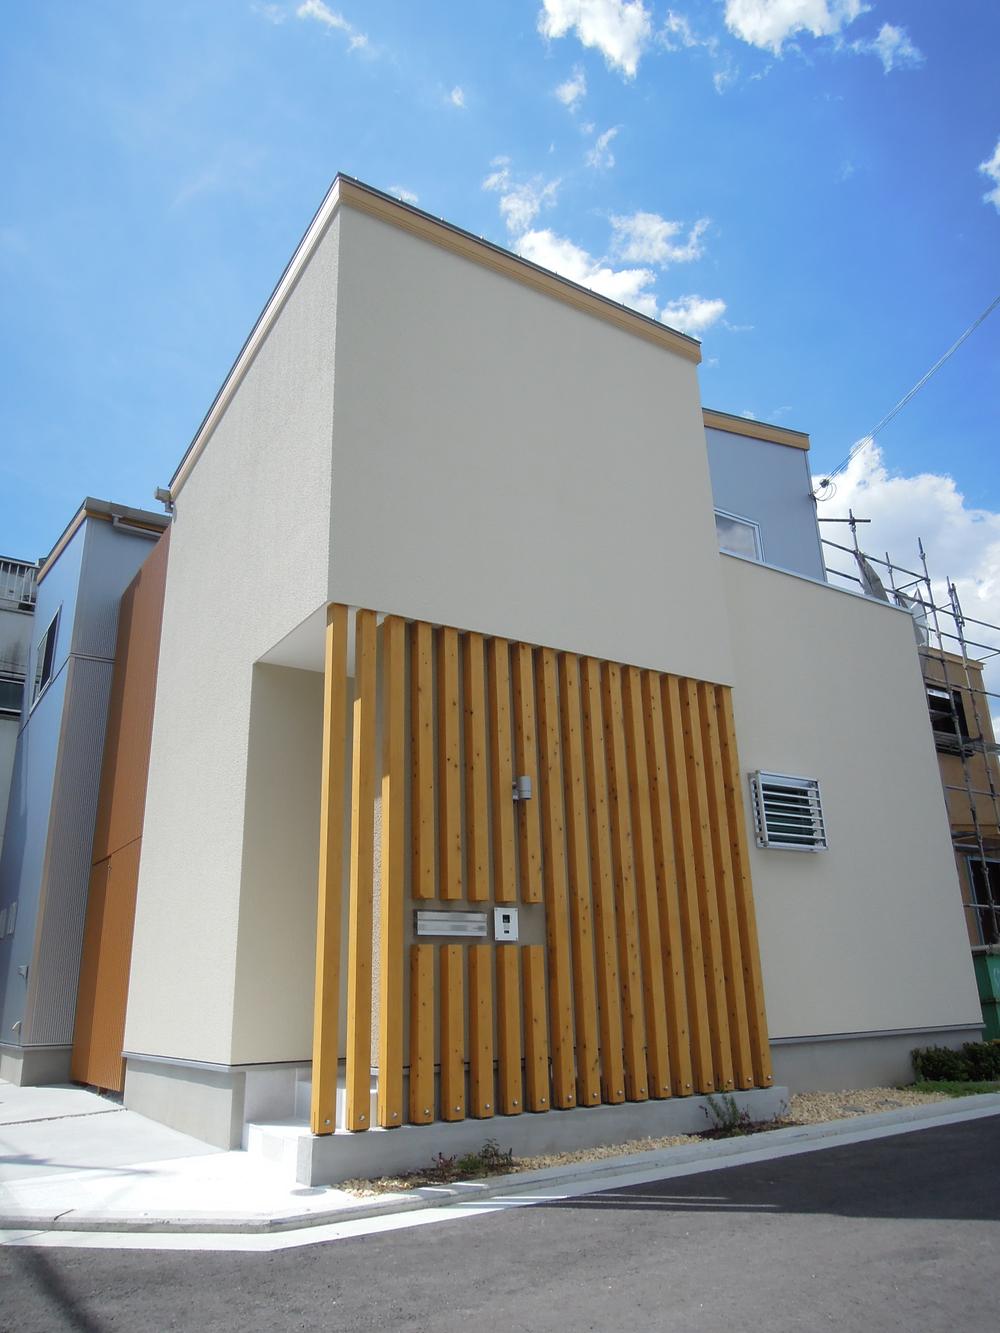 Building plan example (exterior photos). Building plan example building price 15,288,000 yen, Building area 92.56 sq m  ・  ・  ・ Shine blue sky! 